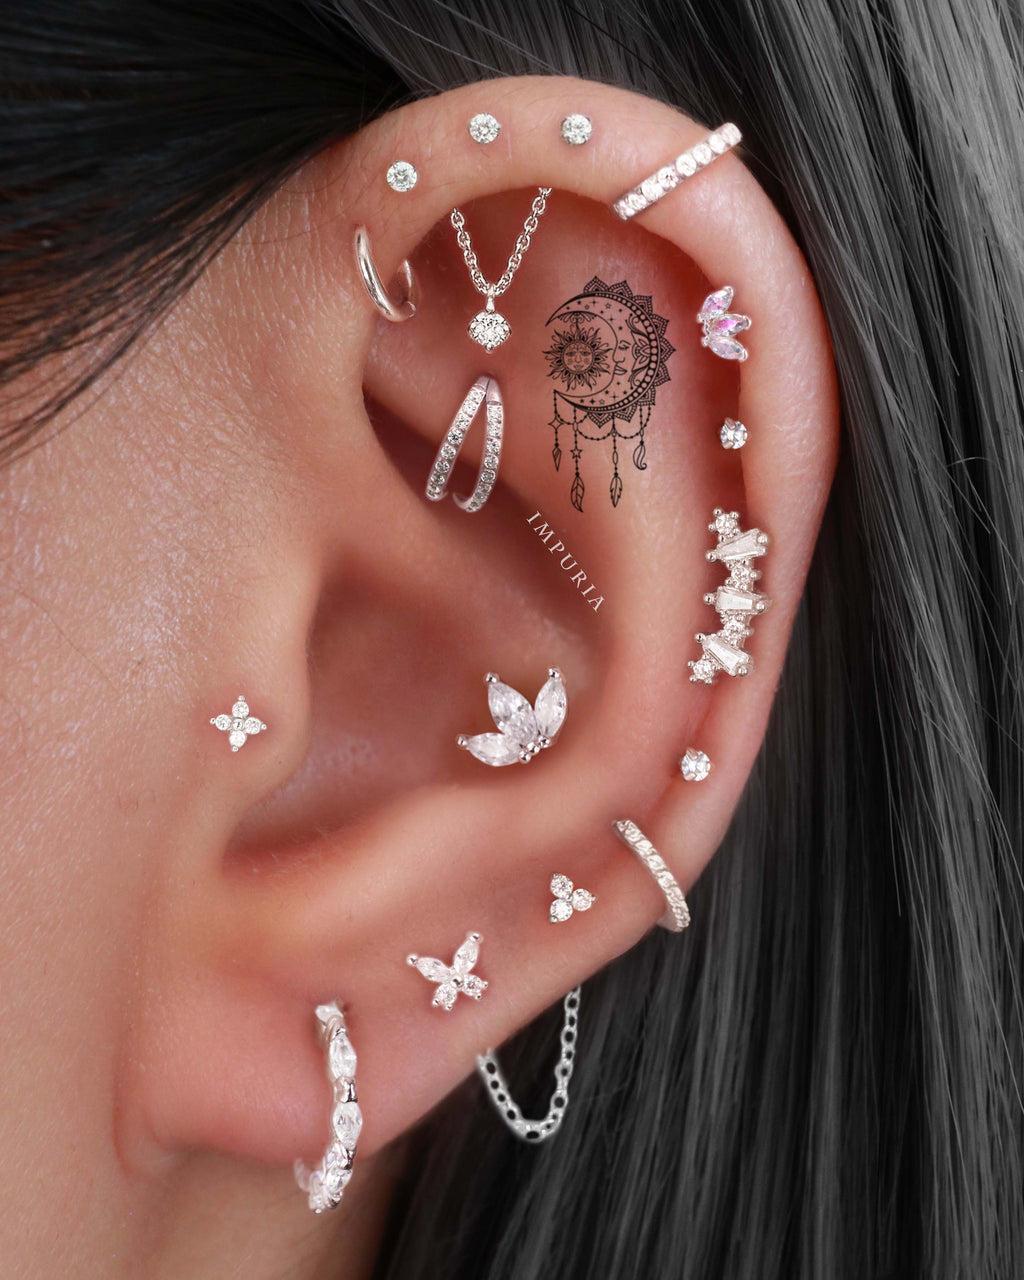 Tragus Earrings Studs & Hoops from Impuria Ear Piercing Jewelry